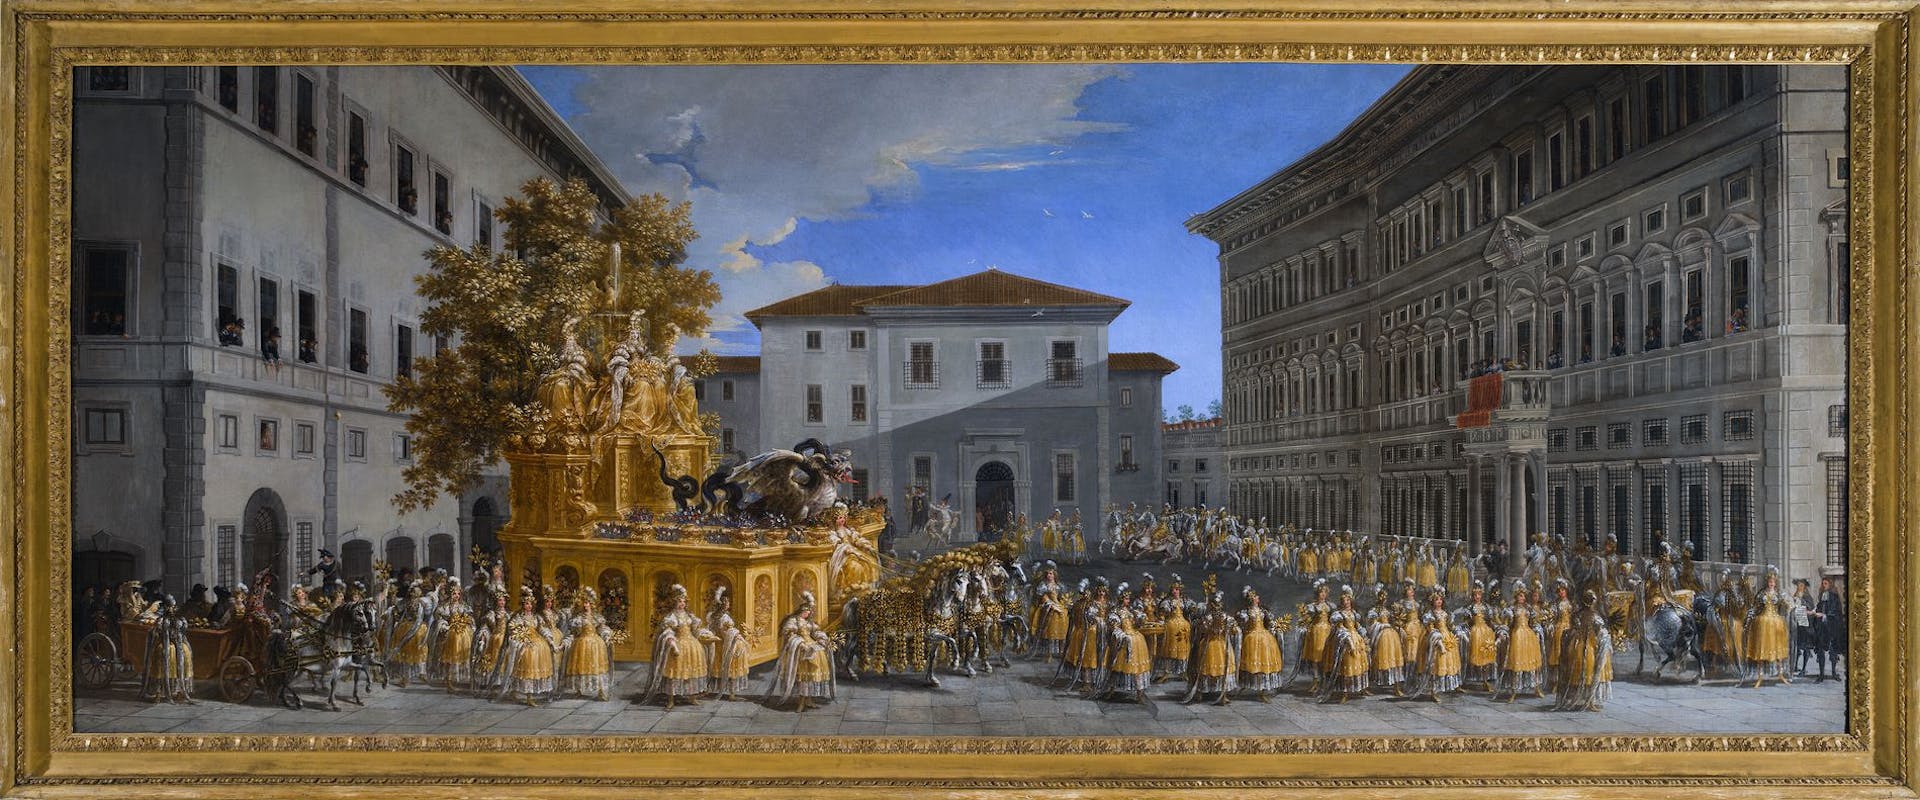 Gli Uffizi acquistano uno spettacolare dipinto di Johann Paul Schor, caposcuola delle Arti decorative del Seicento